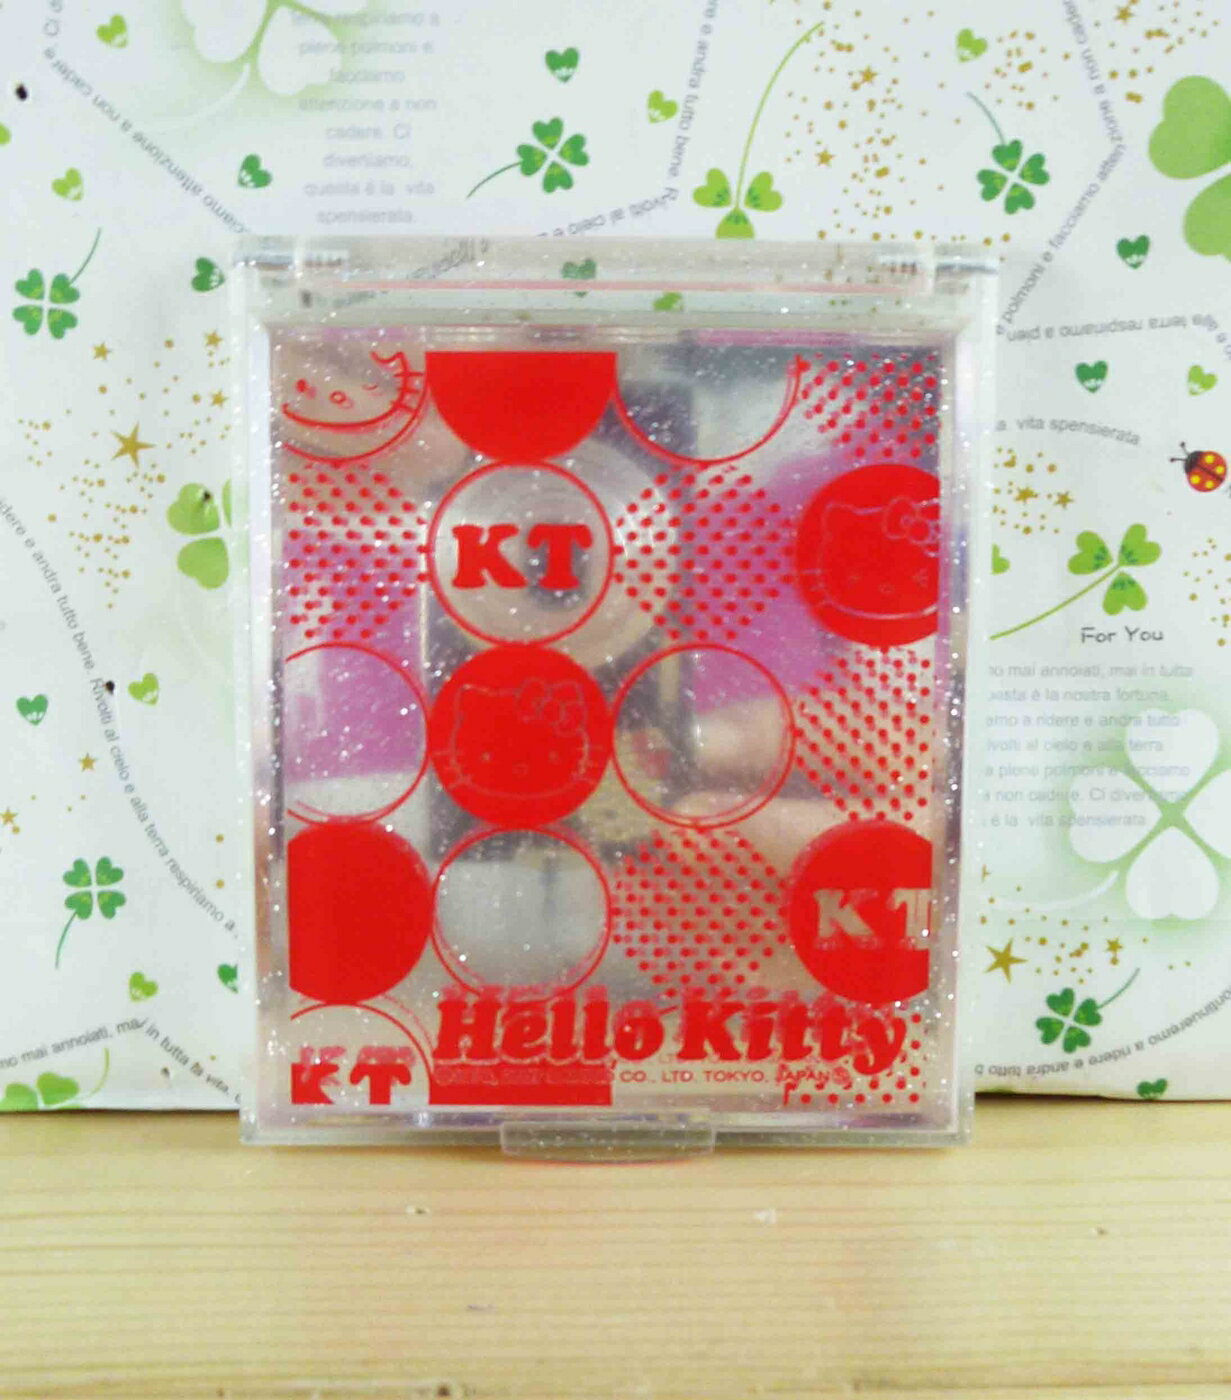 【震撼精品百貨】Hello Kitty 凱蒂貓-摺疊鏡-透明紅點 震撼日式精品百貨